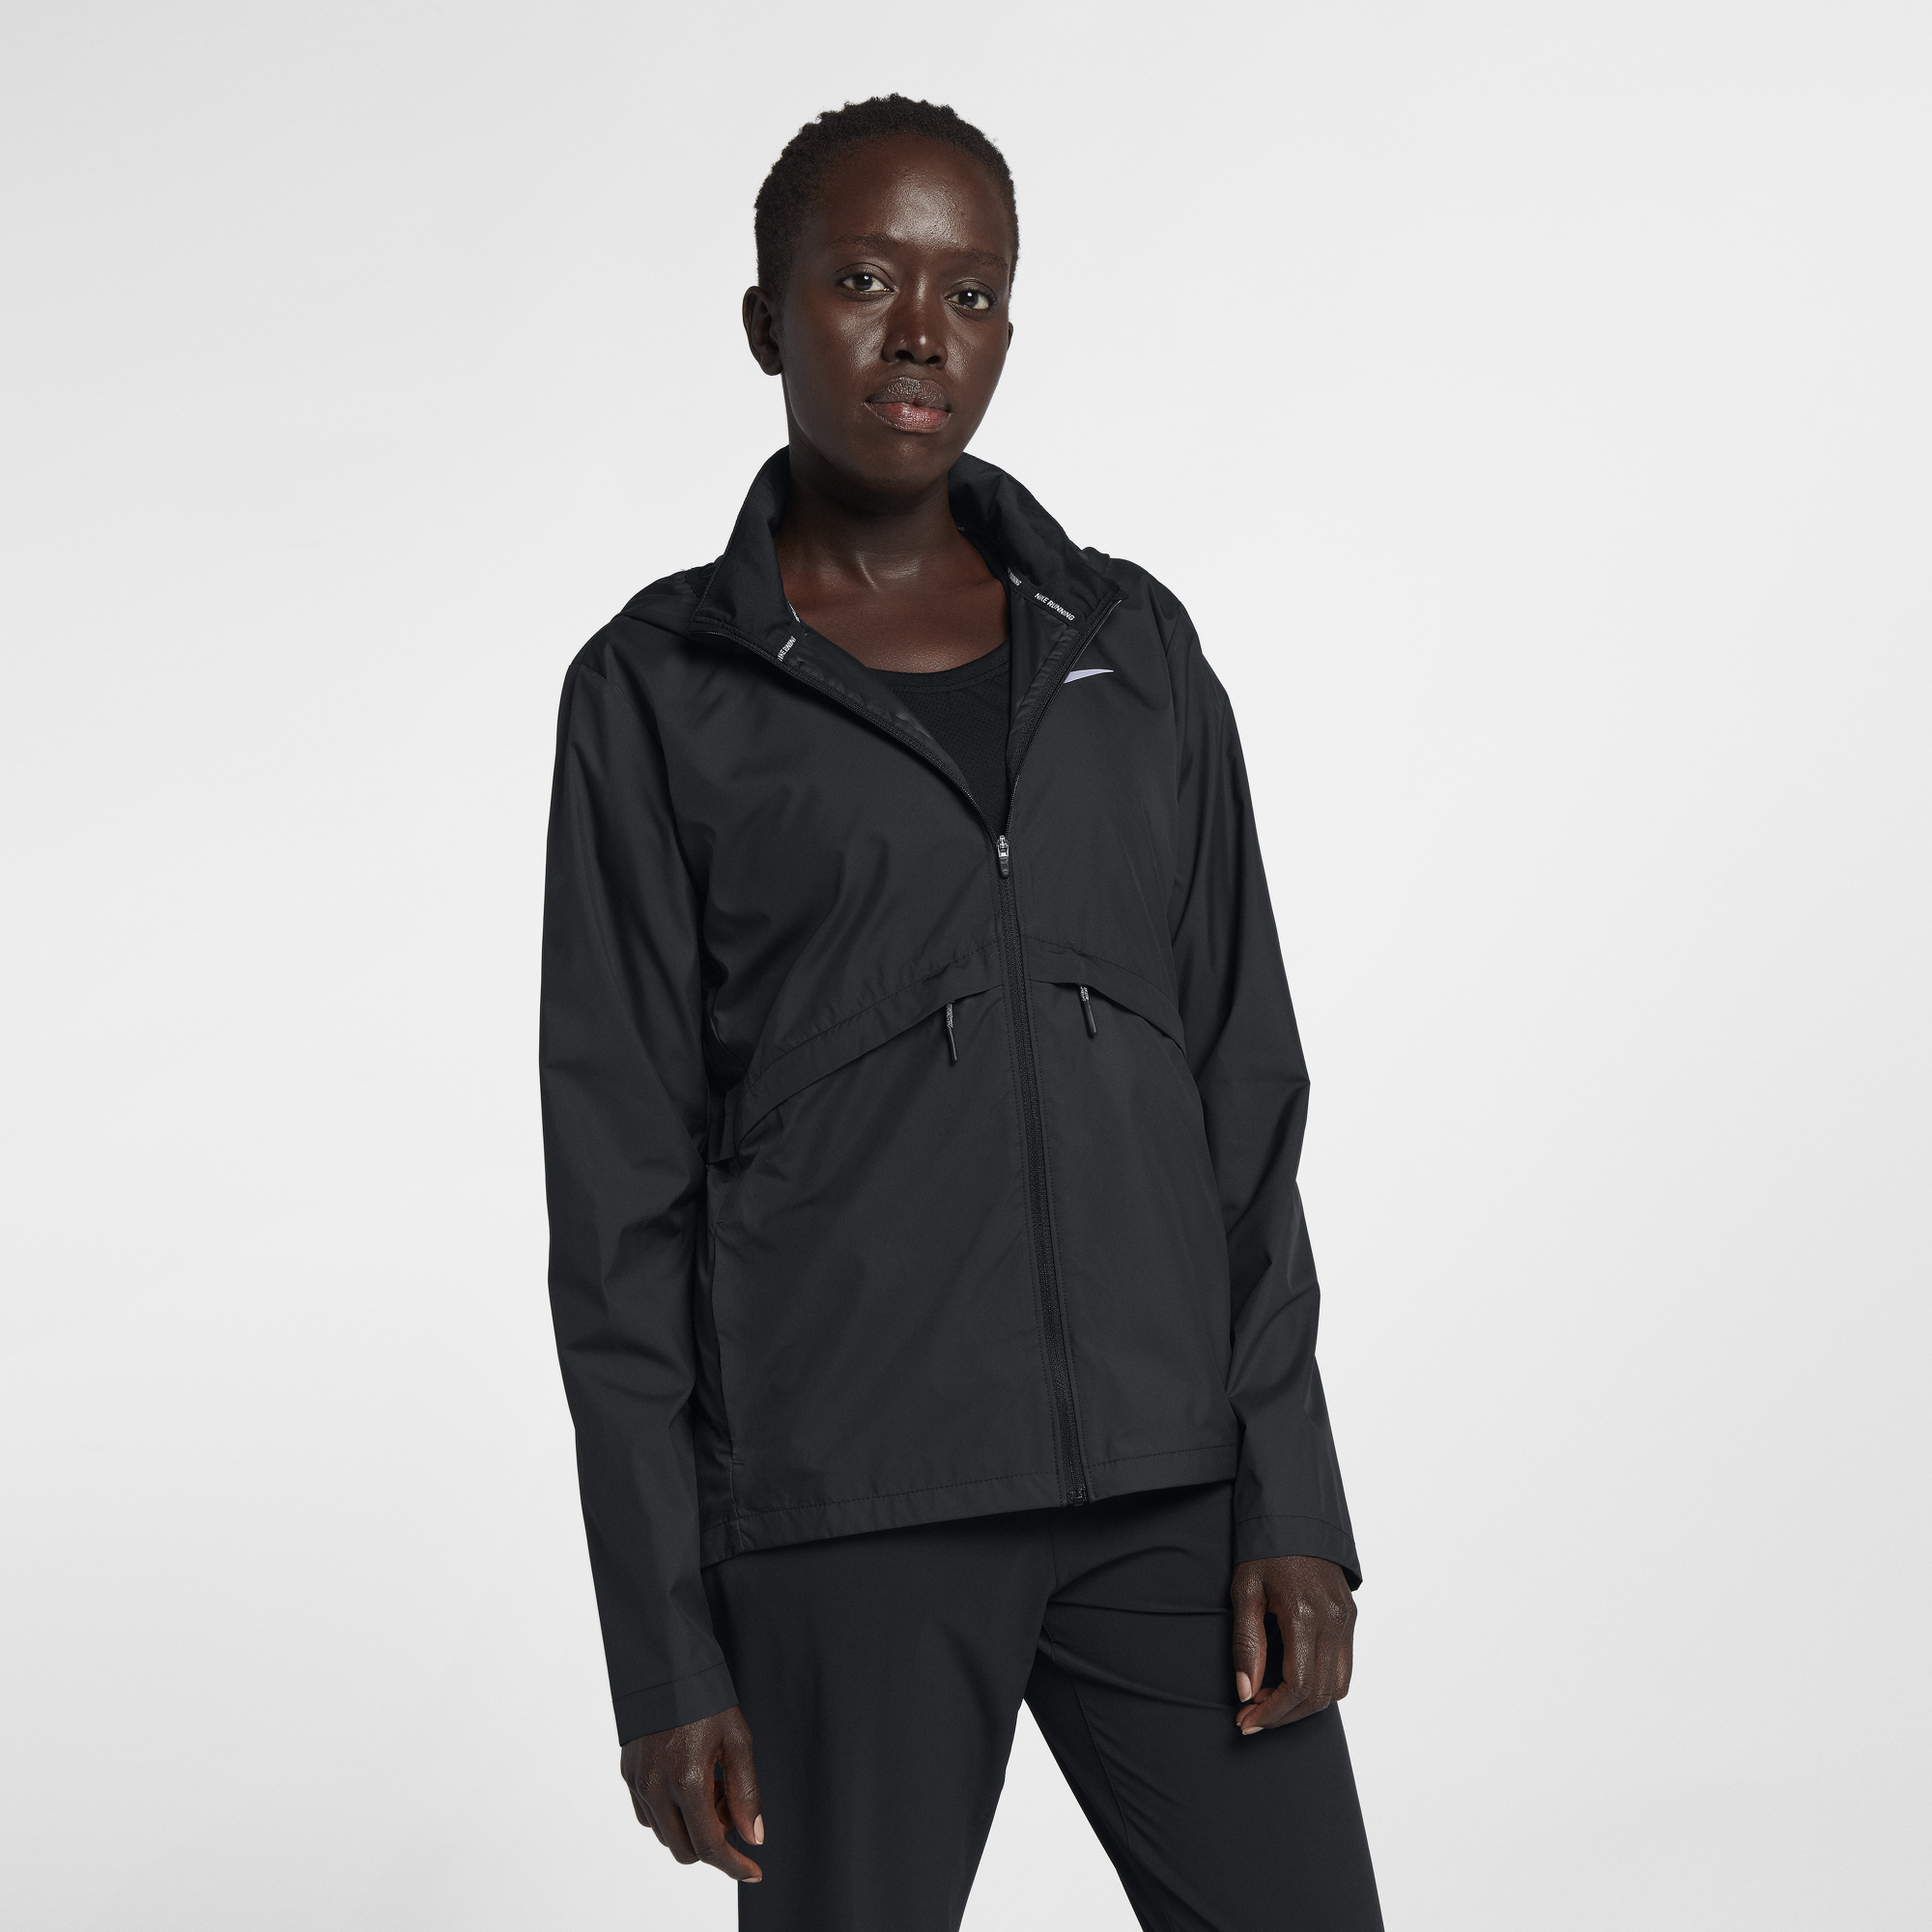 nike women's running jacket sale